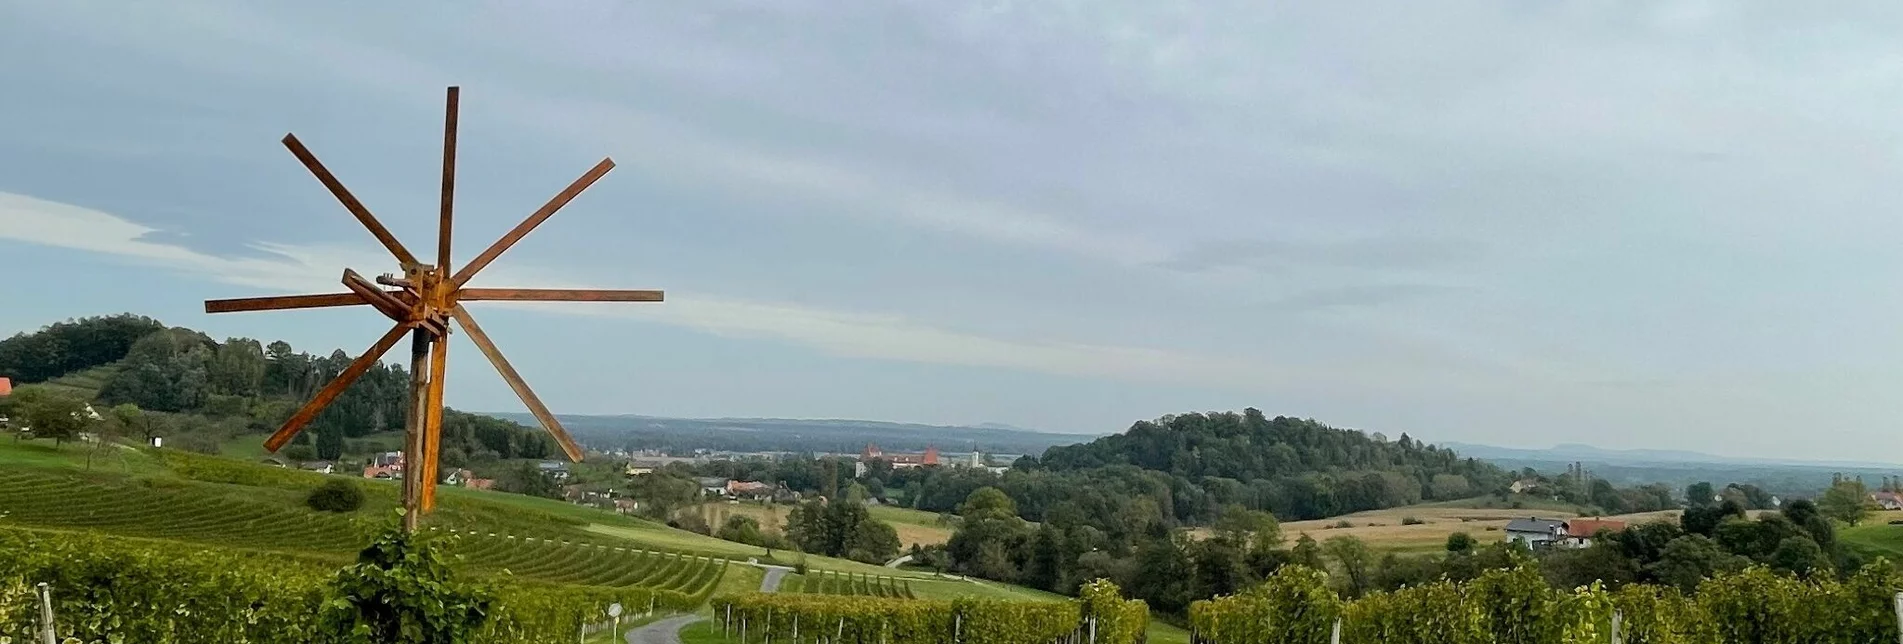 Wanderung Spielfelder Weingärten – Natur – Archäologieweg – Tour 8 lt. WK „Von der Alm zum Wein“ - Touren-Impression #1 | © Südsteiermark